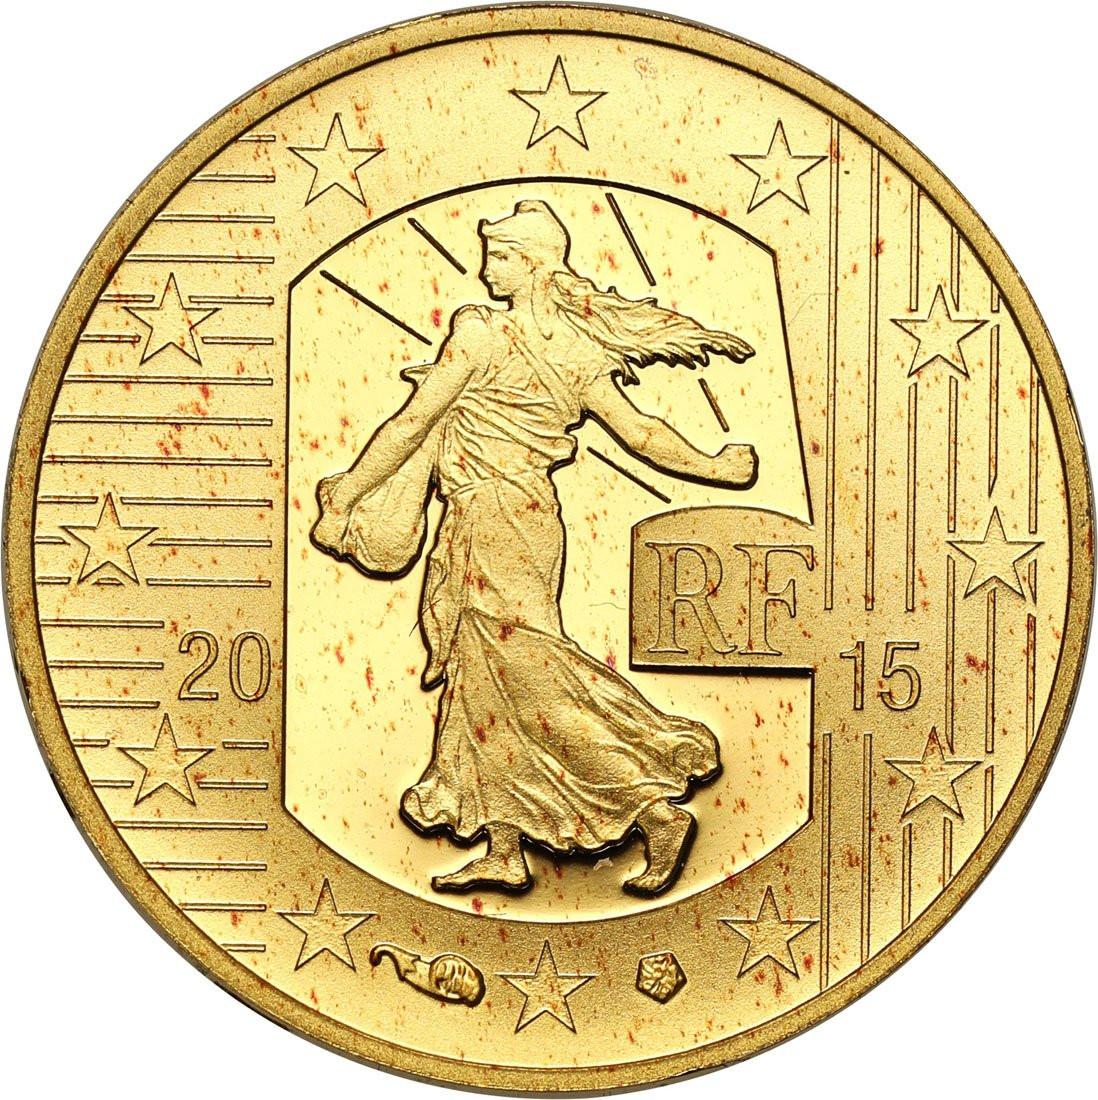 Europa. 10 euro 2015 - 1/10 uncji złota